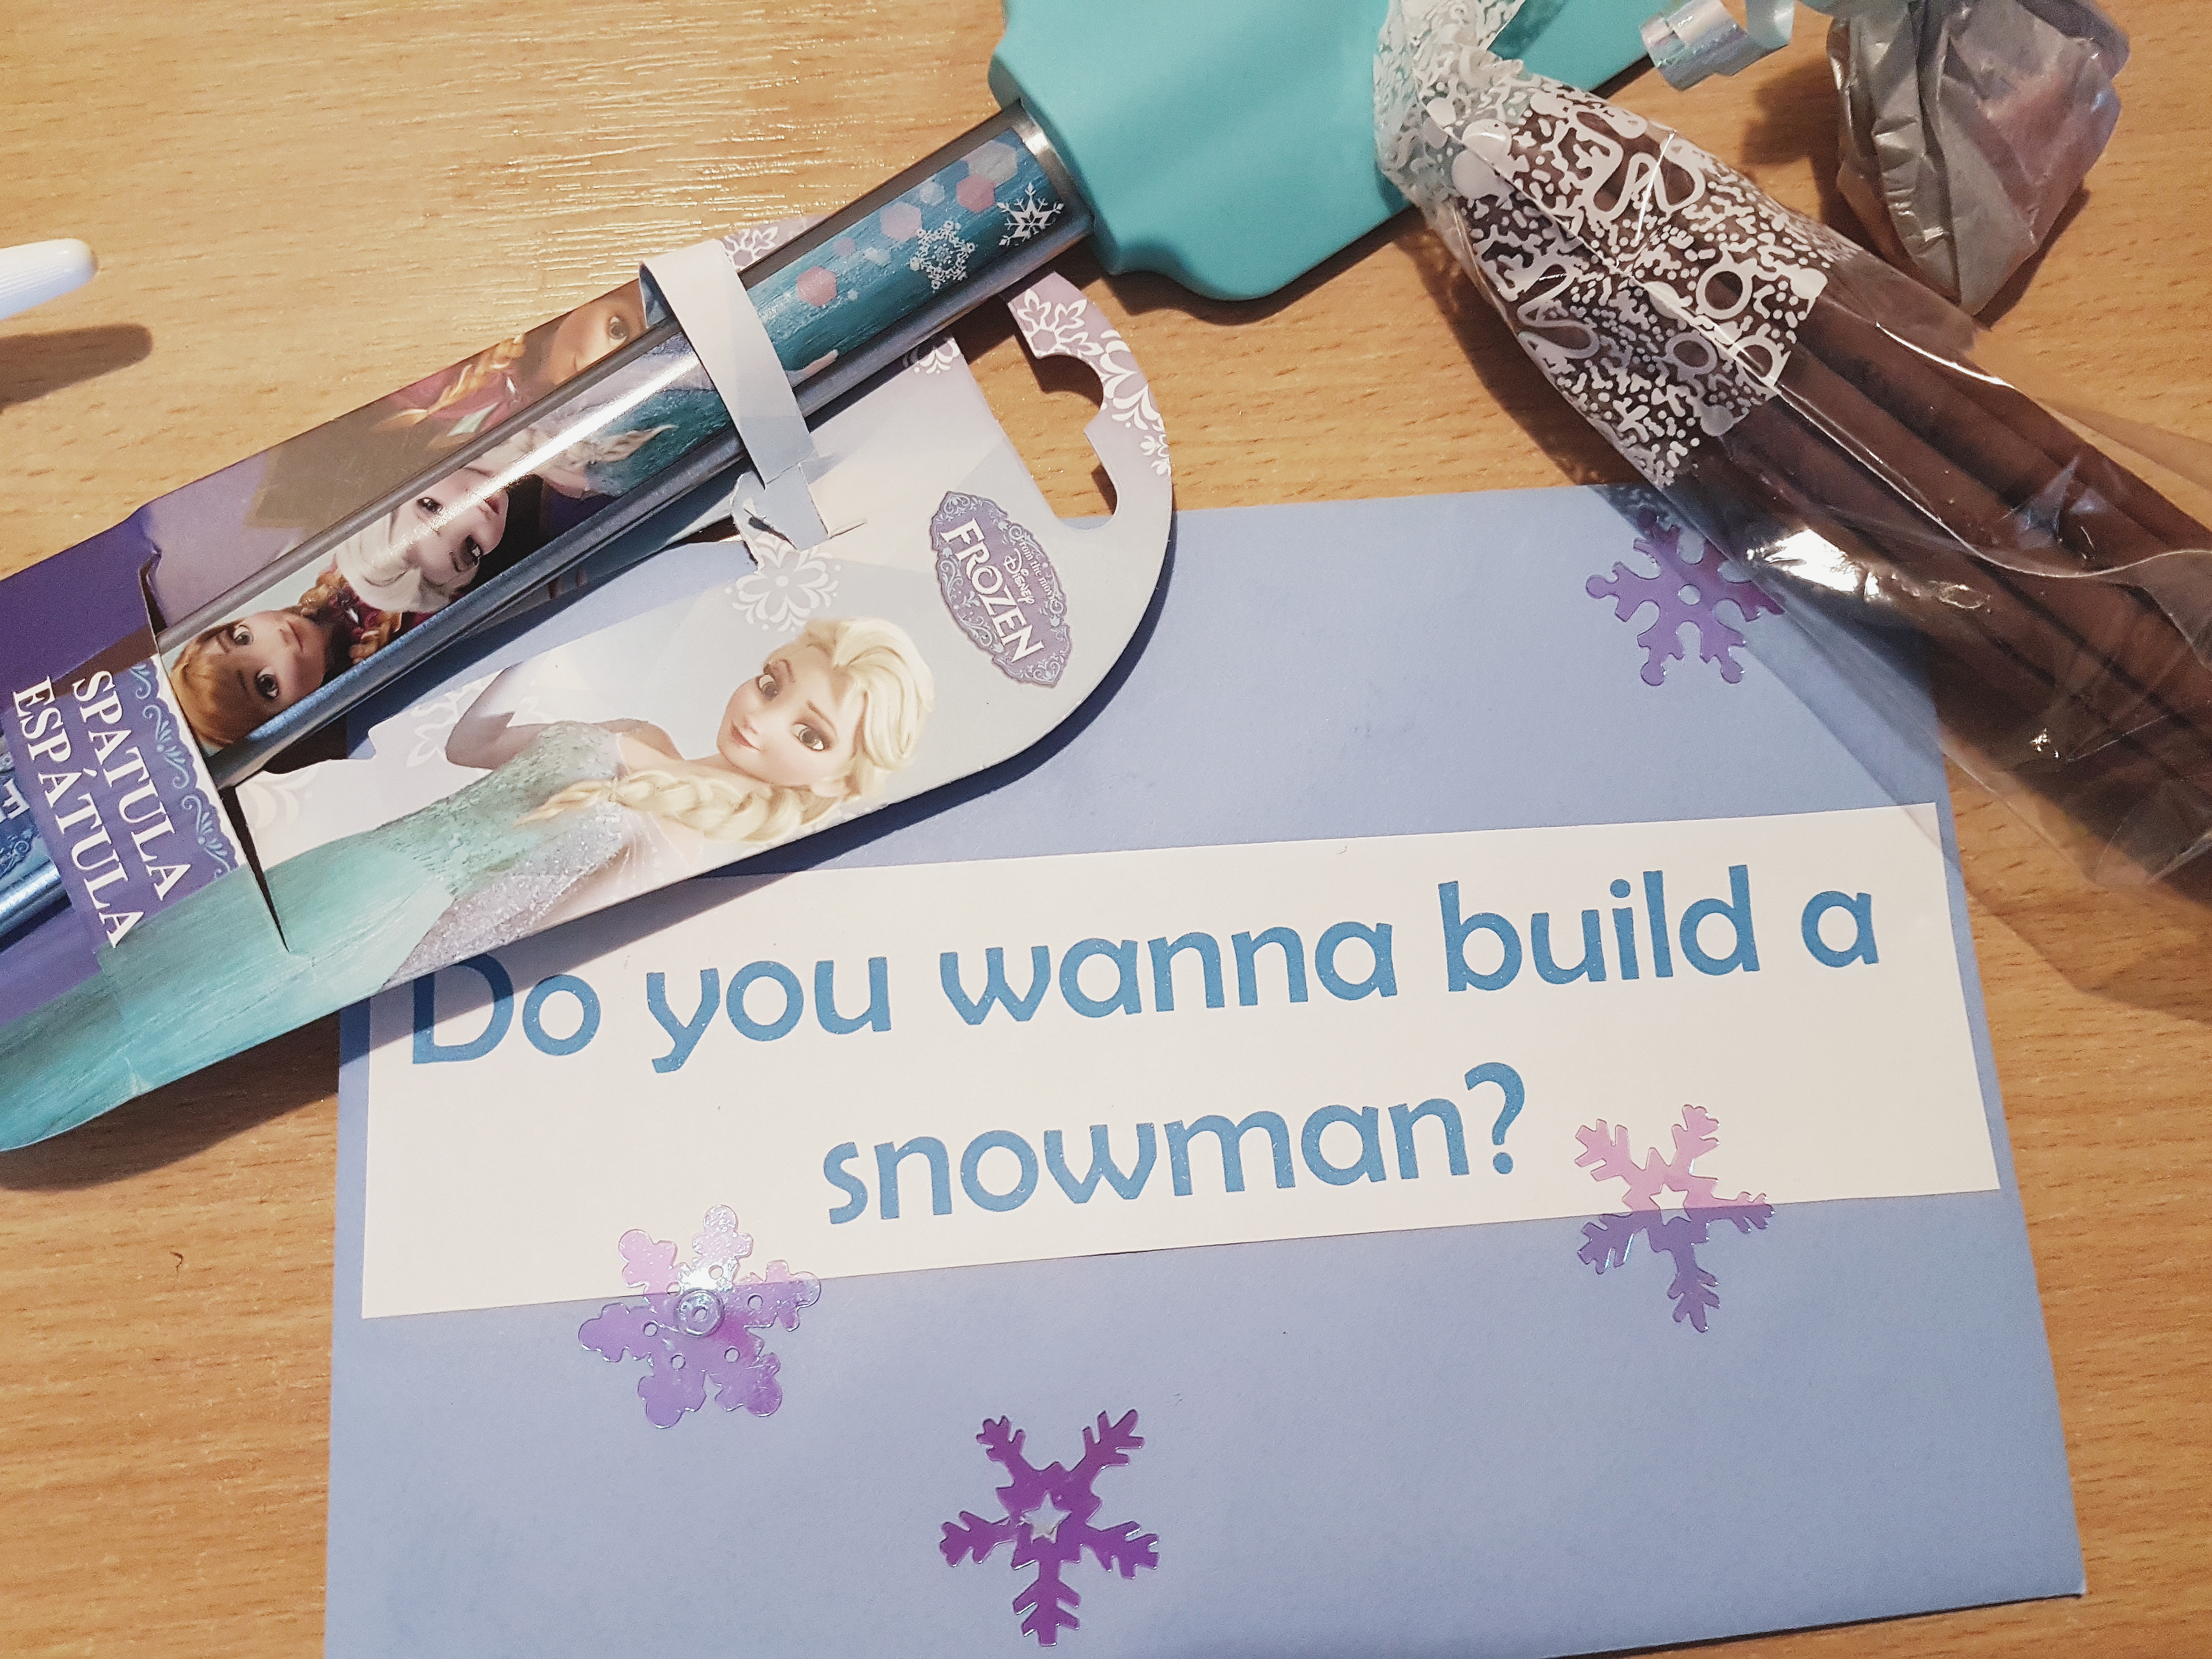 Do you wanna build a snowman